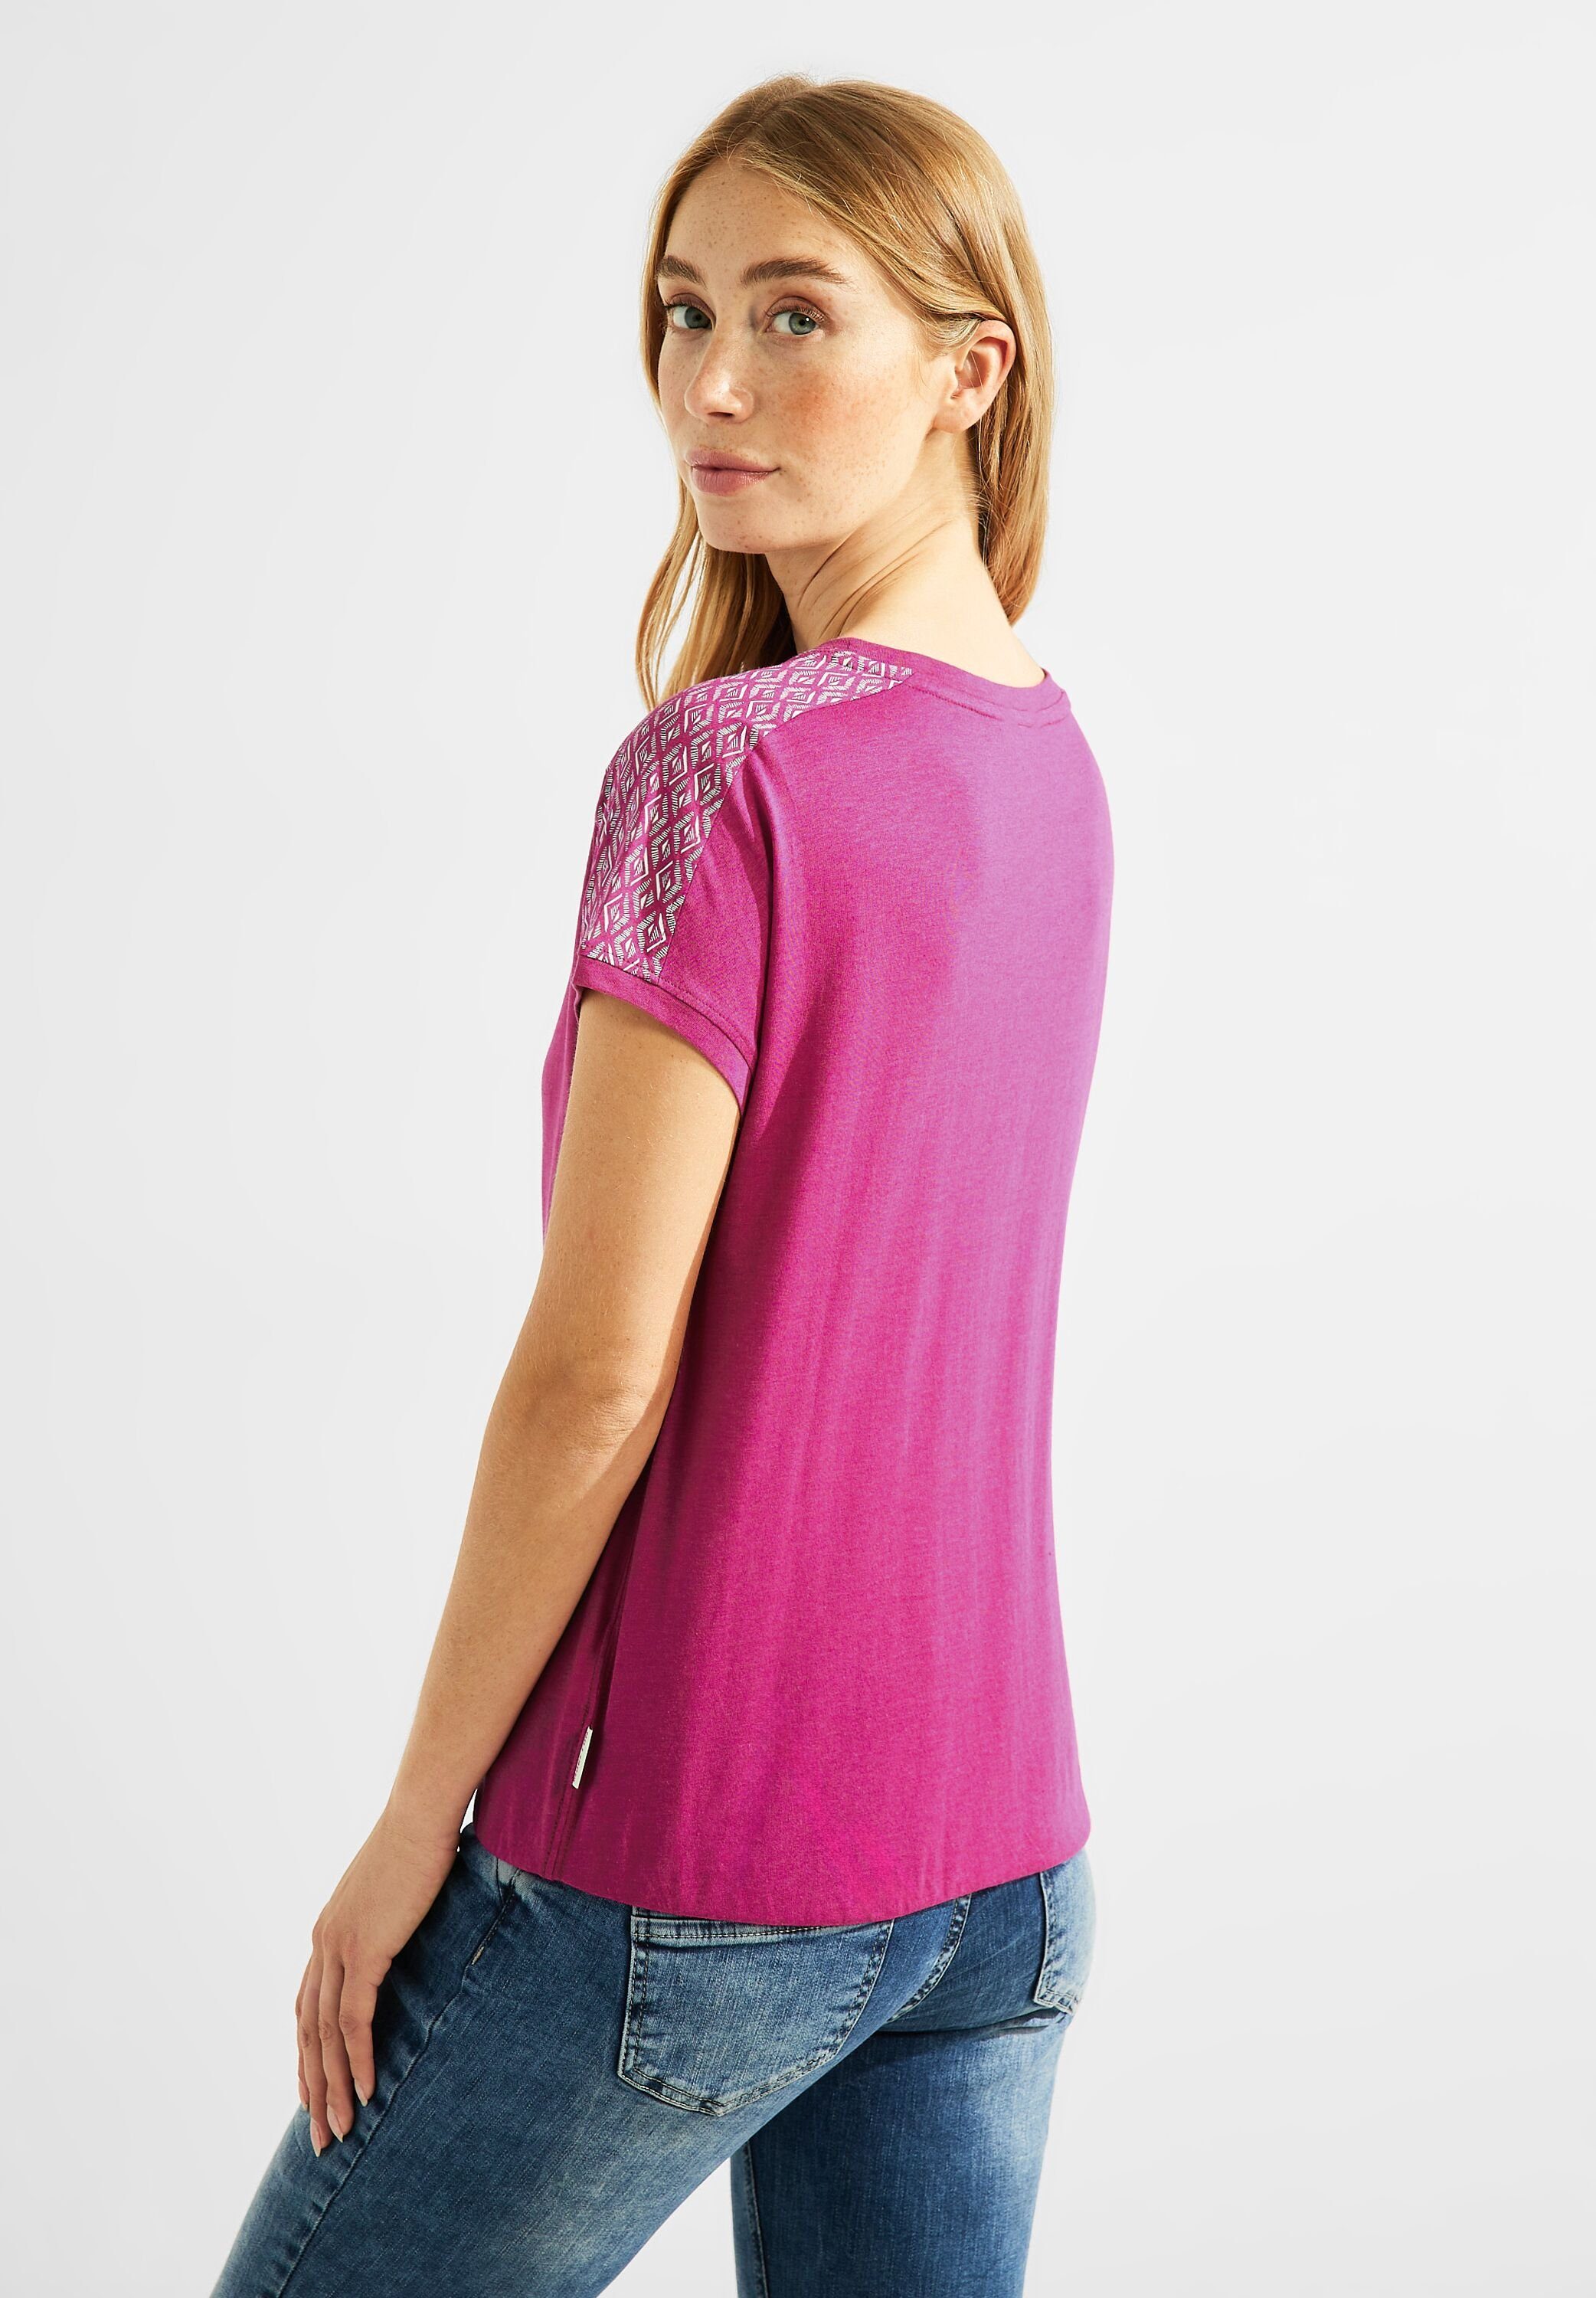 Cecil T-Shirt cool softem pink aus Materialmix